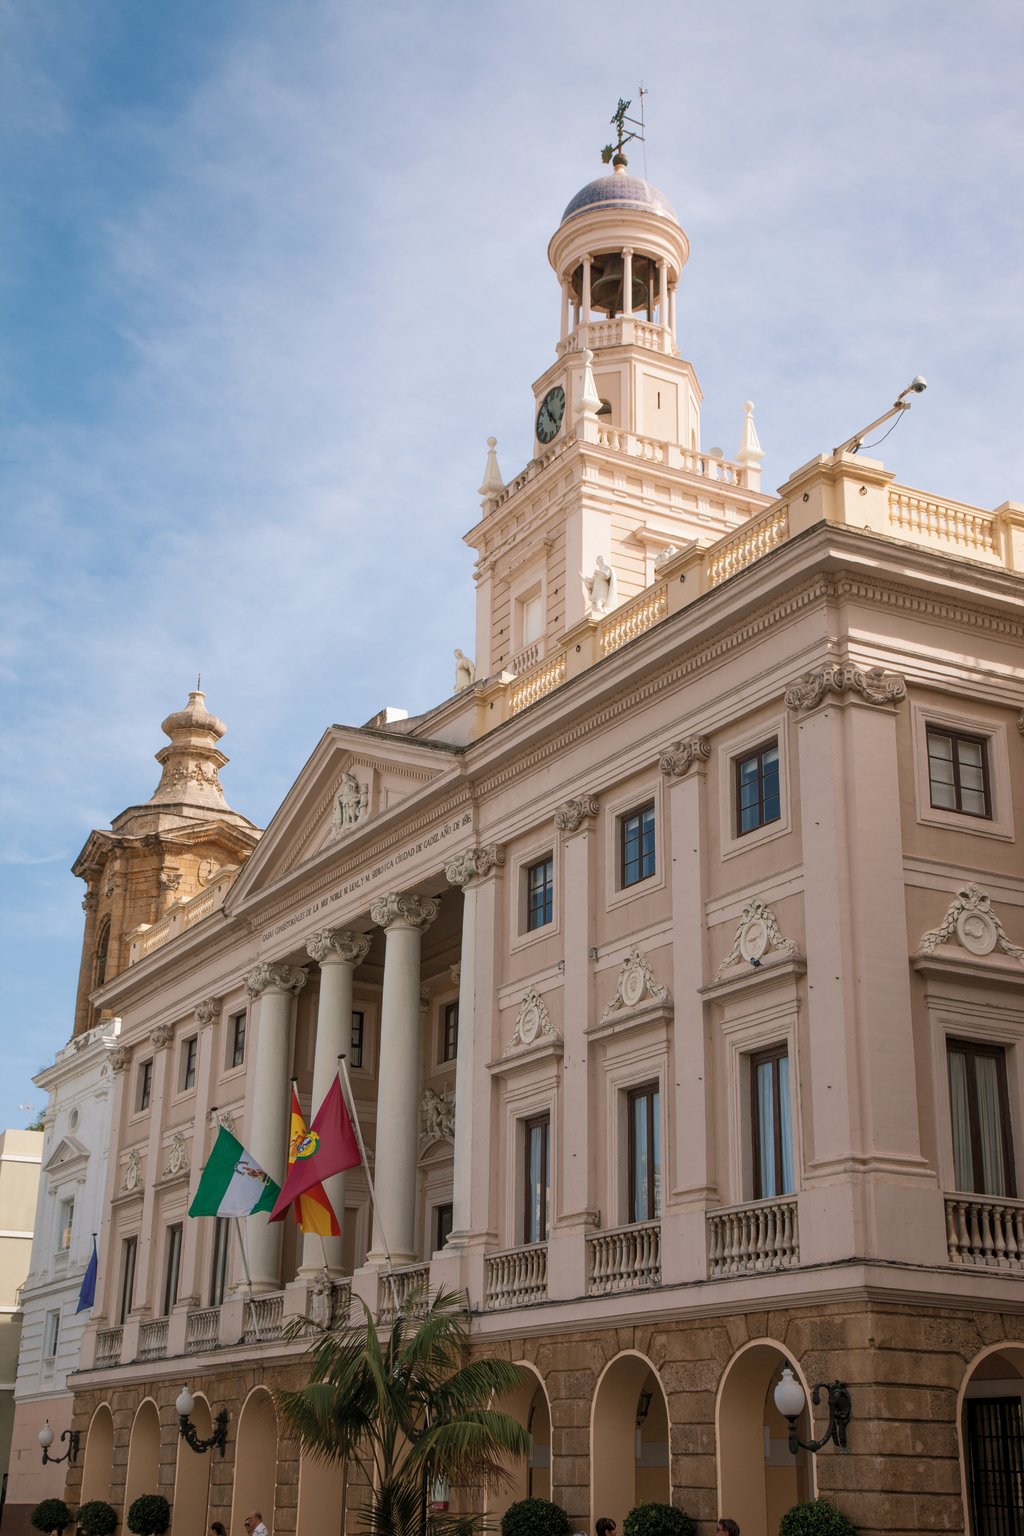 Mein Schiff Sehenswürdigkeit in Cádiz: Das Rathaus im neoklassizistischen Stil